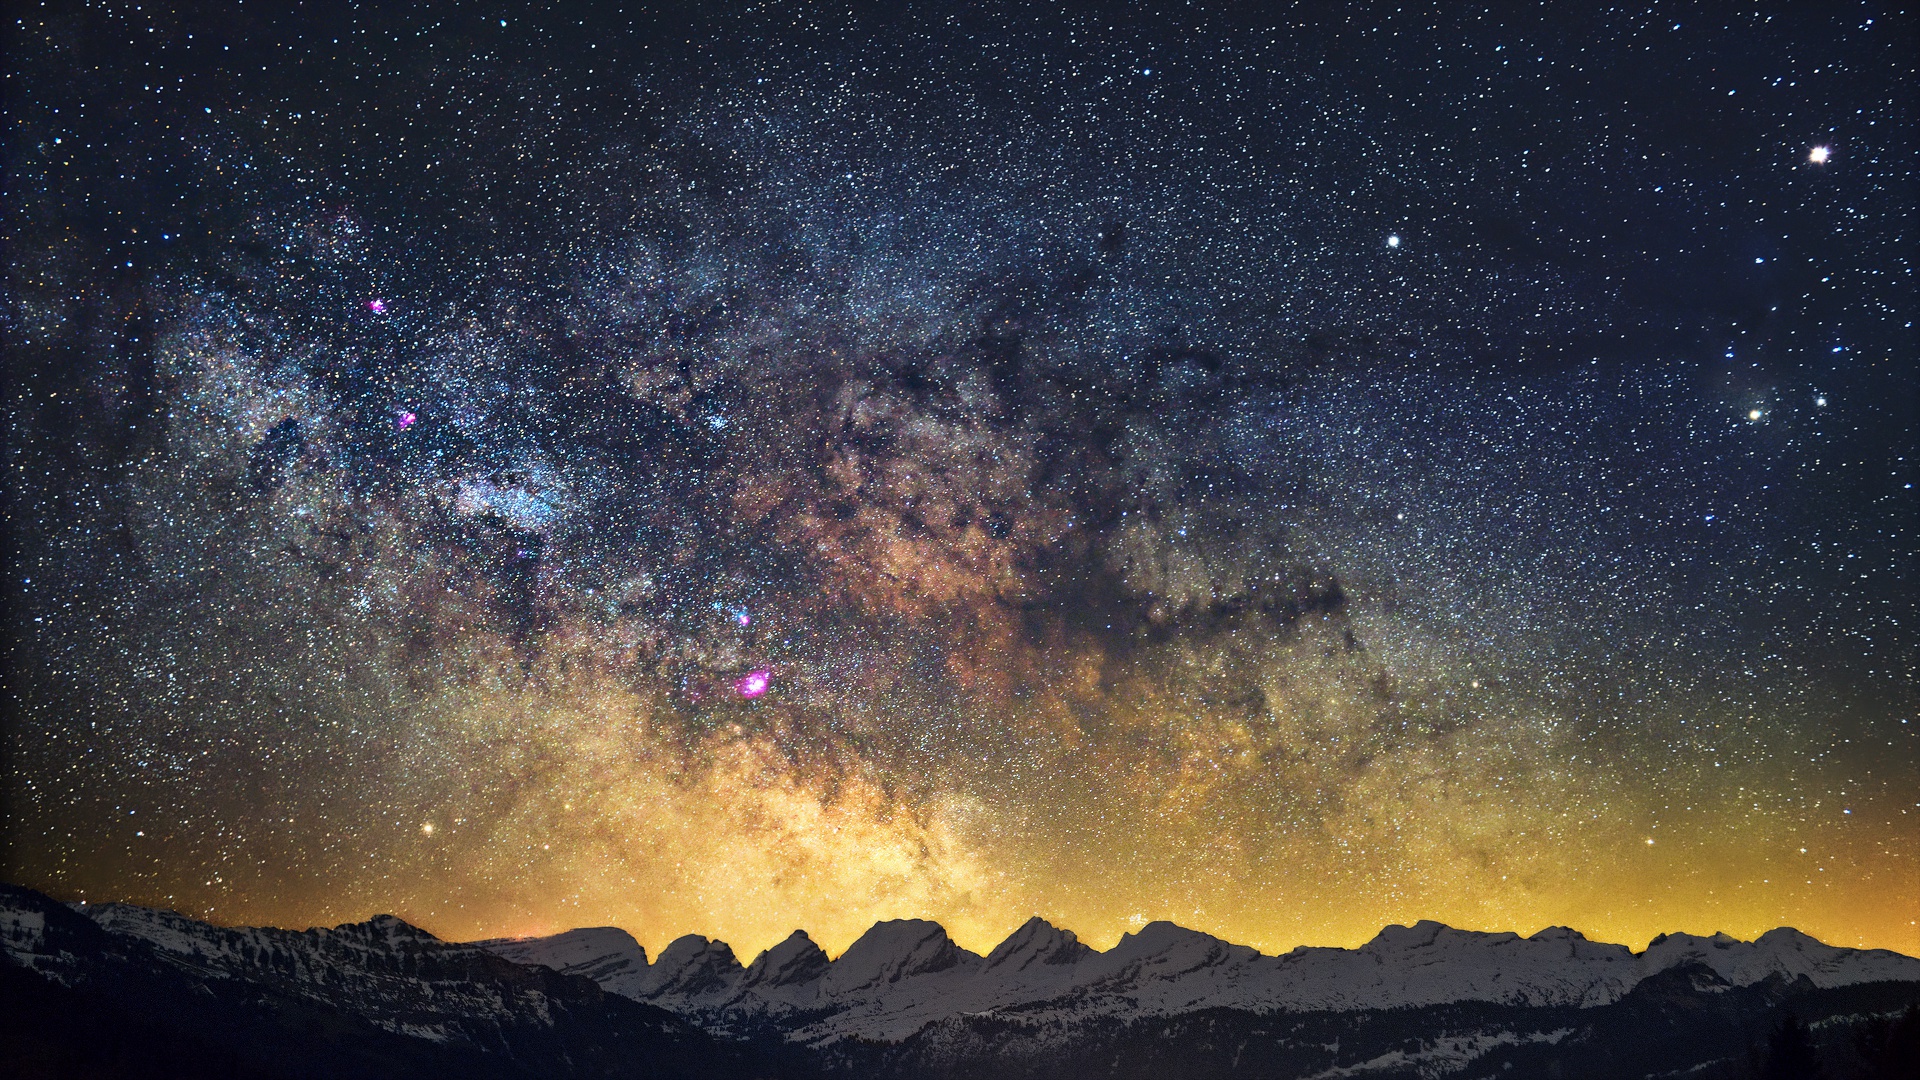 Скачать обои бесплатно Природа, Небо, Звезды, Ночь, Гора, Звездное Небо, Млечный Путь, Ландшафт, Научная Фантастика картинка на рабочий стол ПК